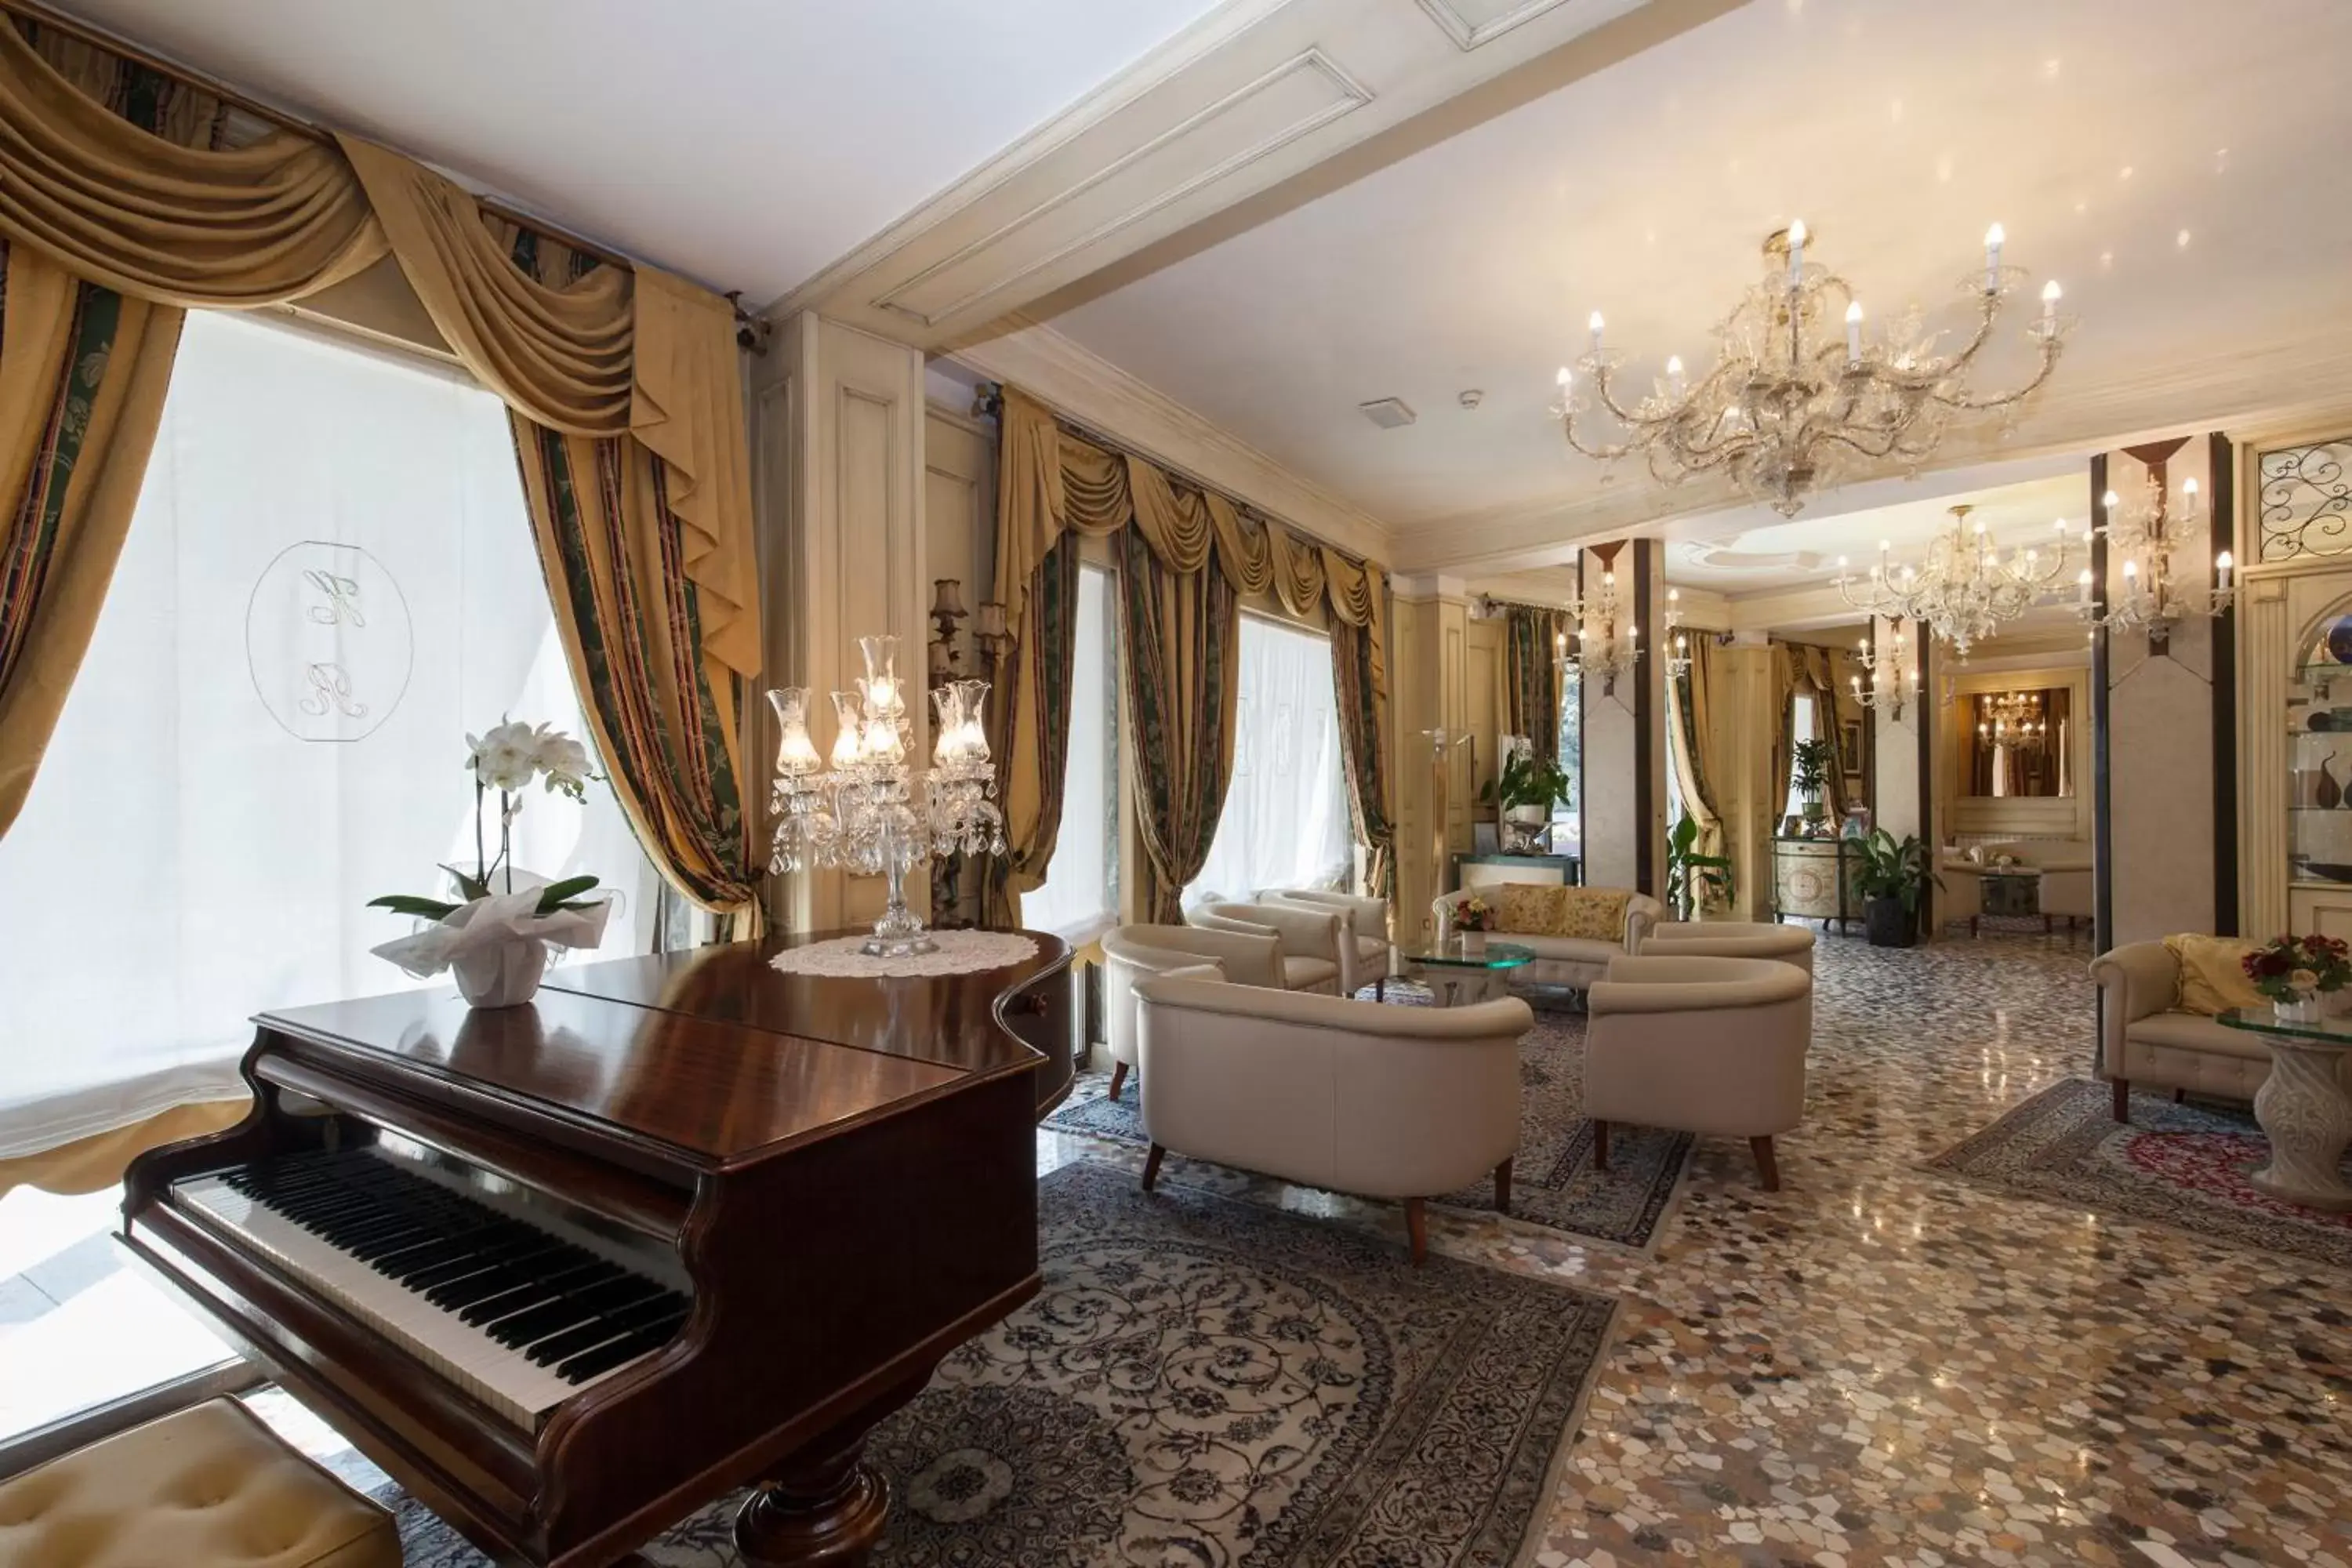 Lobby or reception in Hotel Riviera Venezia Lido